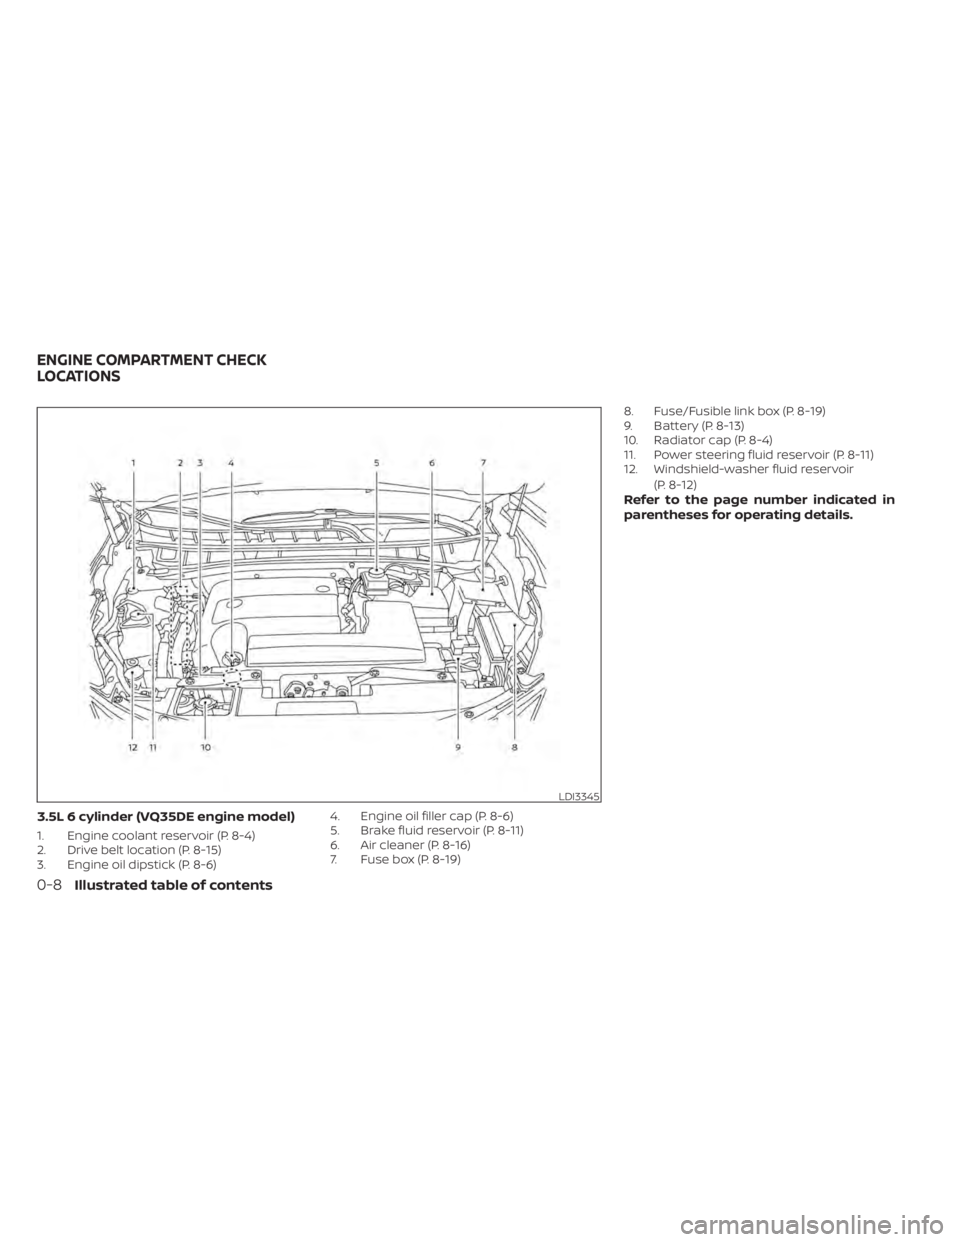 NISSAN MURANO 2021  Owner´s Manual 3.5L 6 cylinder (VQ35DE engine model)
1. Engine coolant reservoir (P. 8-4)
2. Drive belt location (P. 8-15)
3. Engine oil dipstick (P. 8-6)4. Engine oil filler cap (P. 8-6)
5. Brake fluid reservoir (P